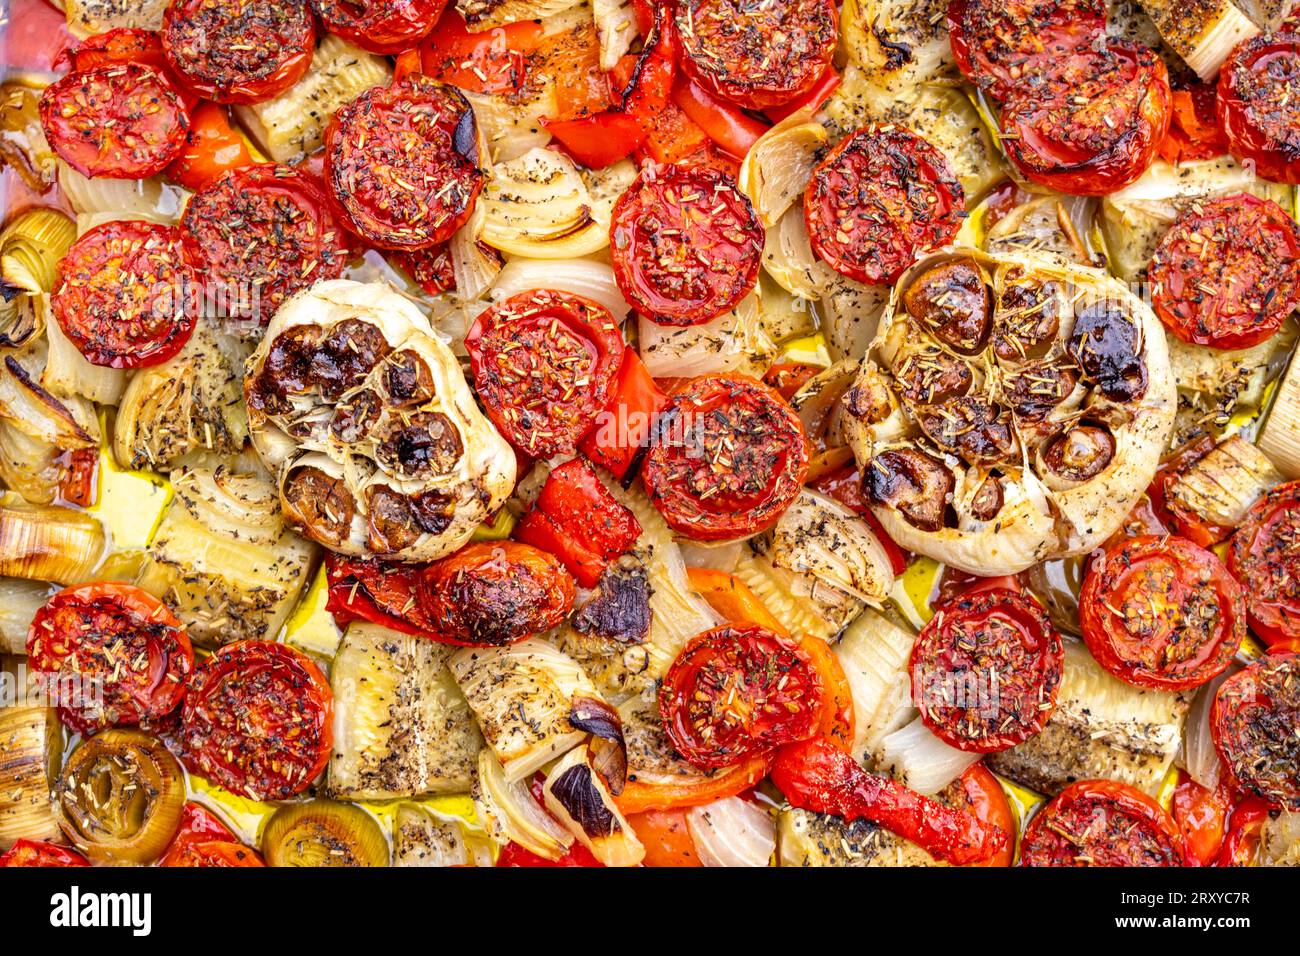 Ofengemüse, verschiedene Gemüsesorten werden im Ofen, mit Kräutern, Gewürzen, Olivenöl, gegart, Stock Photo